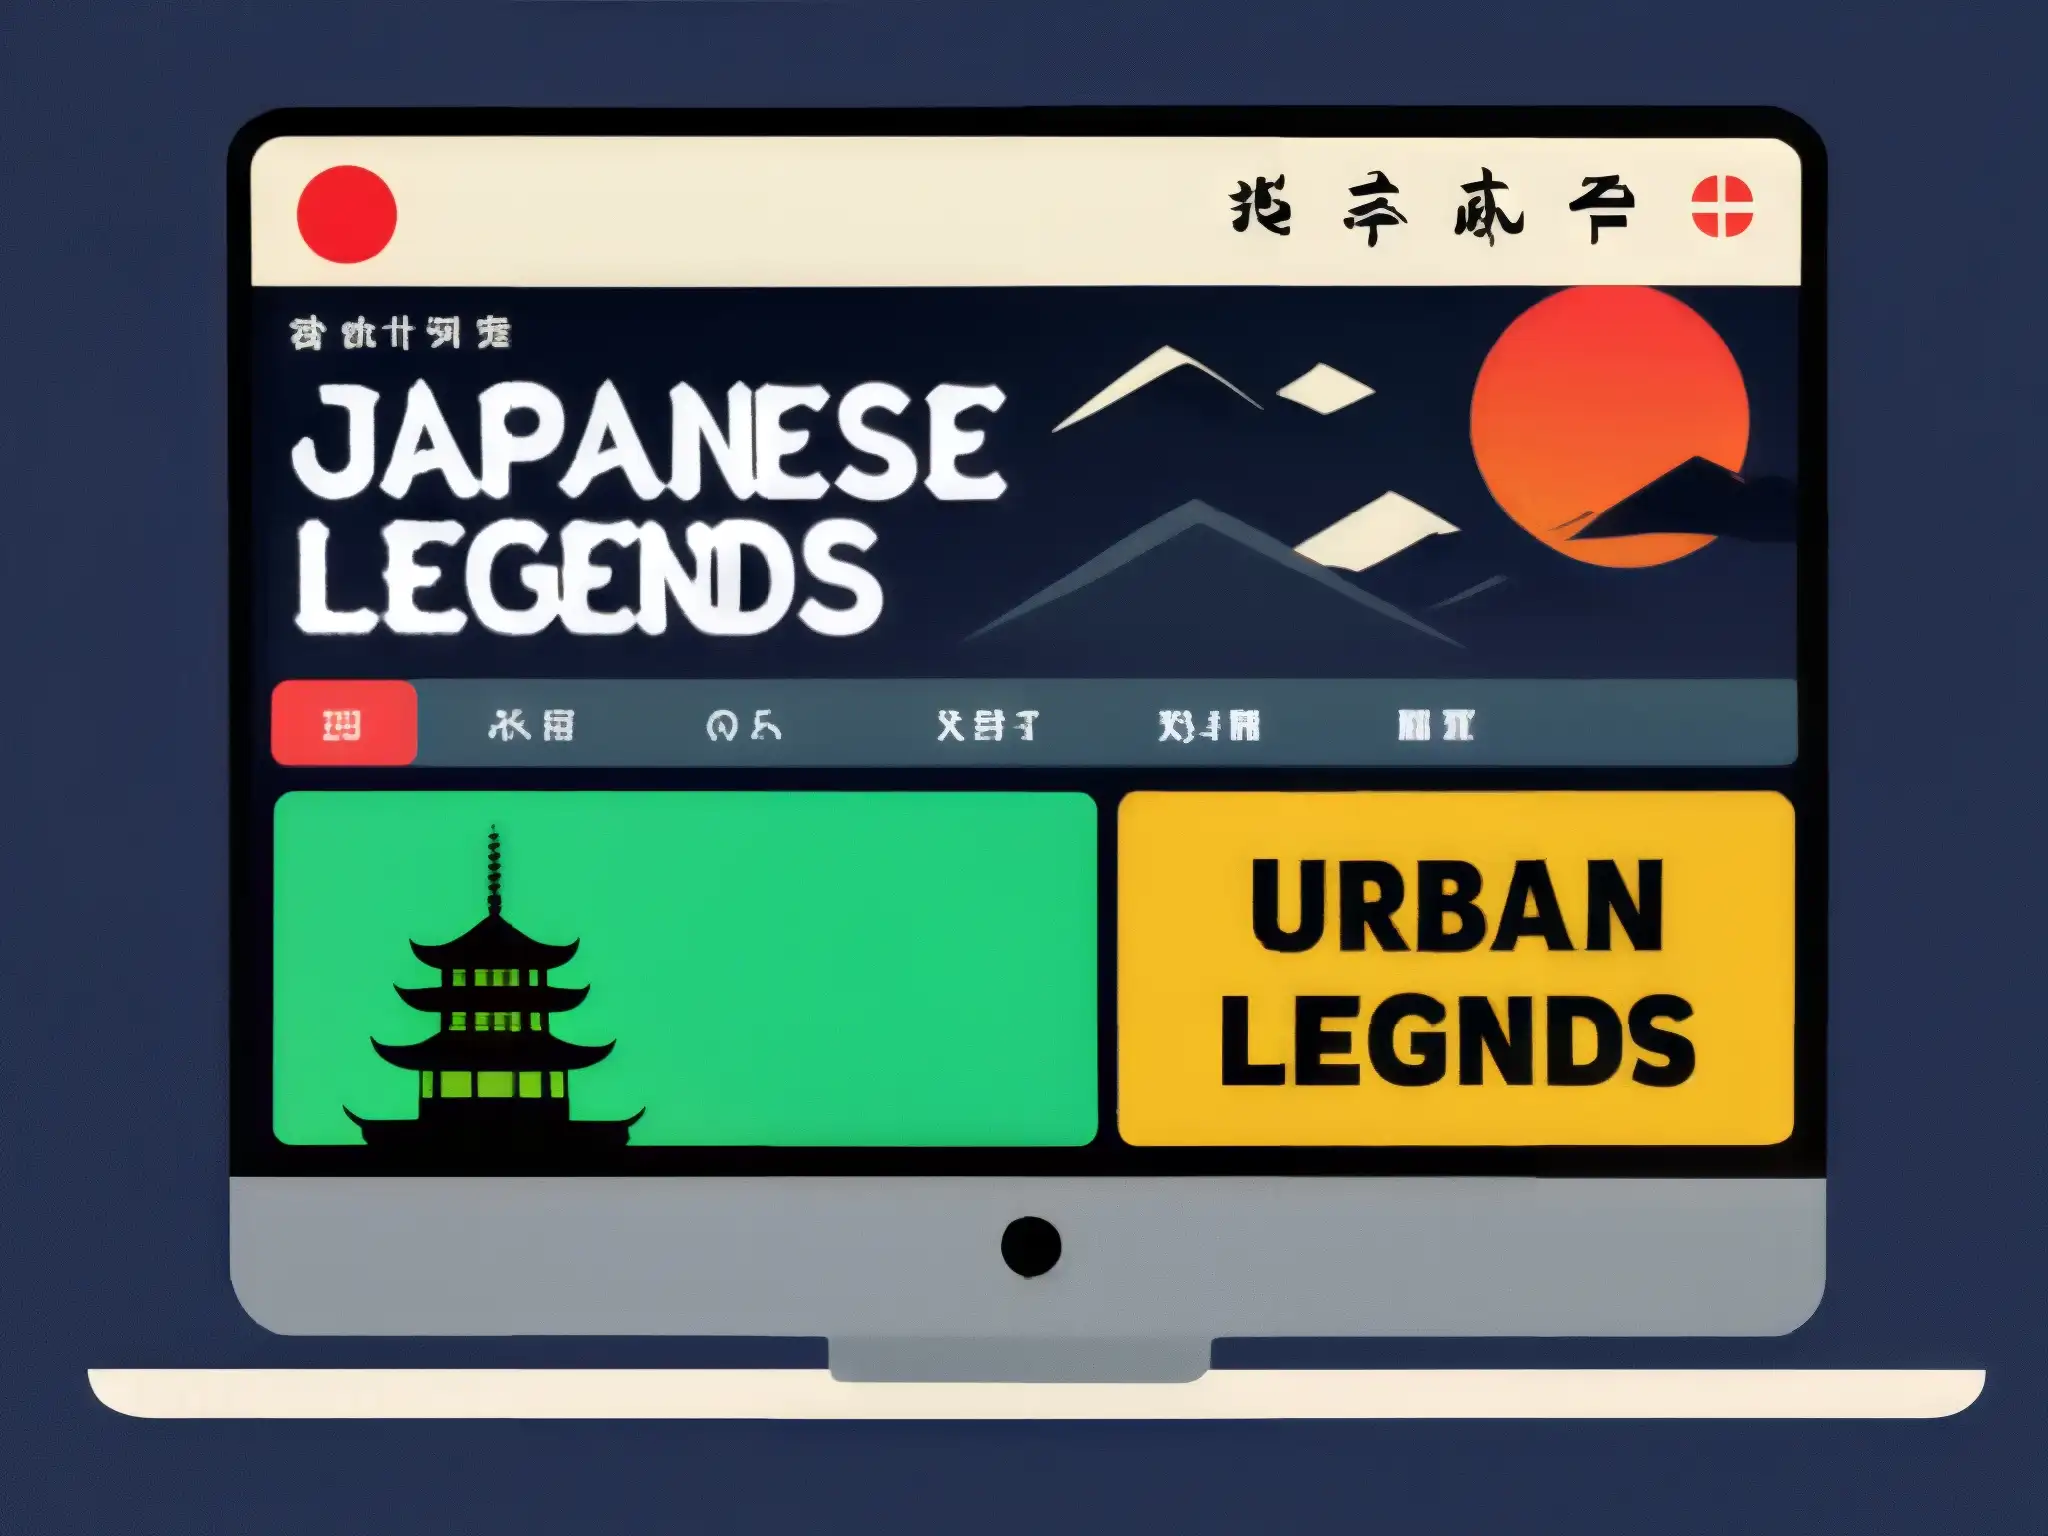 Un vibrante foro online de leyendas urbanas japonesas, donde la tradición y la modernidad se entrelazan en animadas discusiones